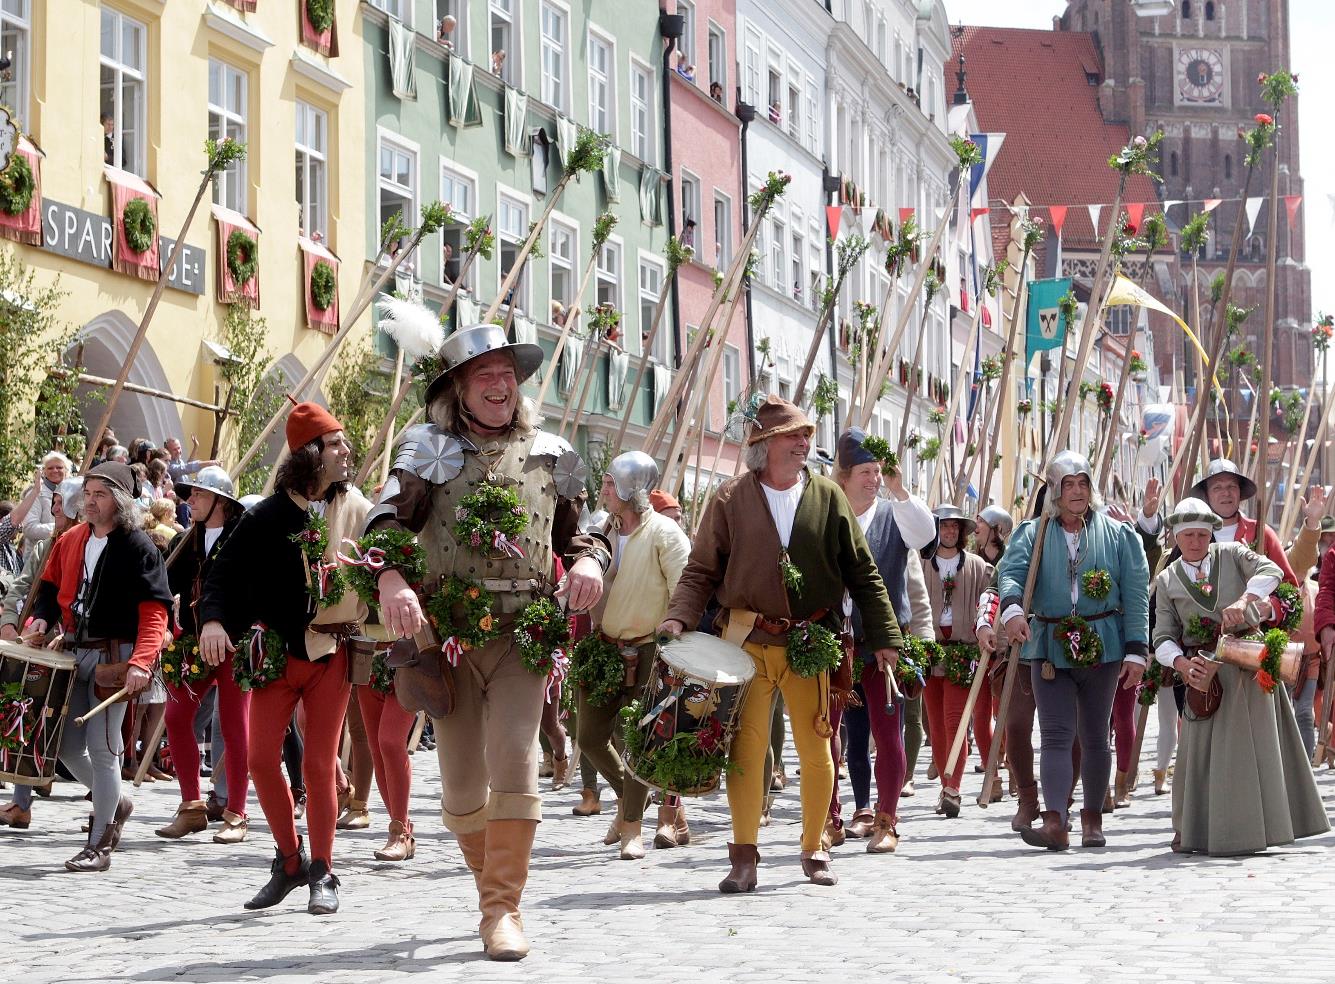 Die Landshuter Hochzeit ist das bekannteste Mittelalterfest Bayerns.